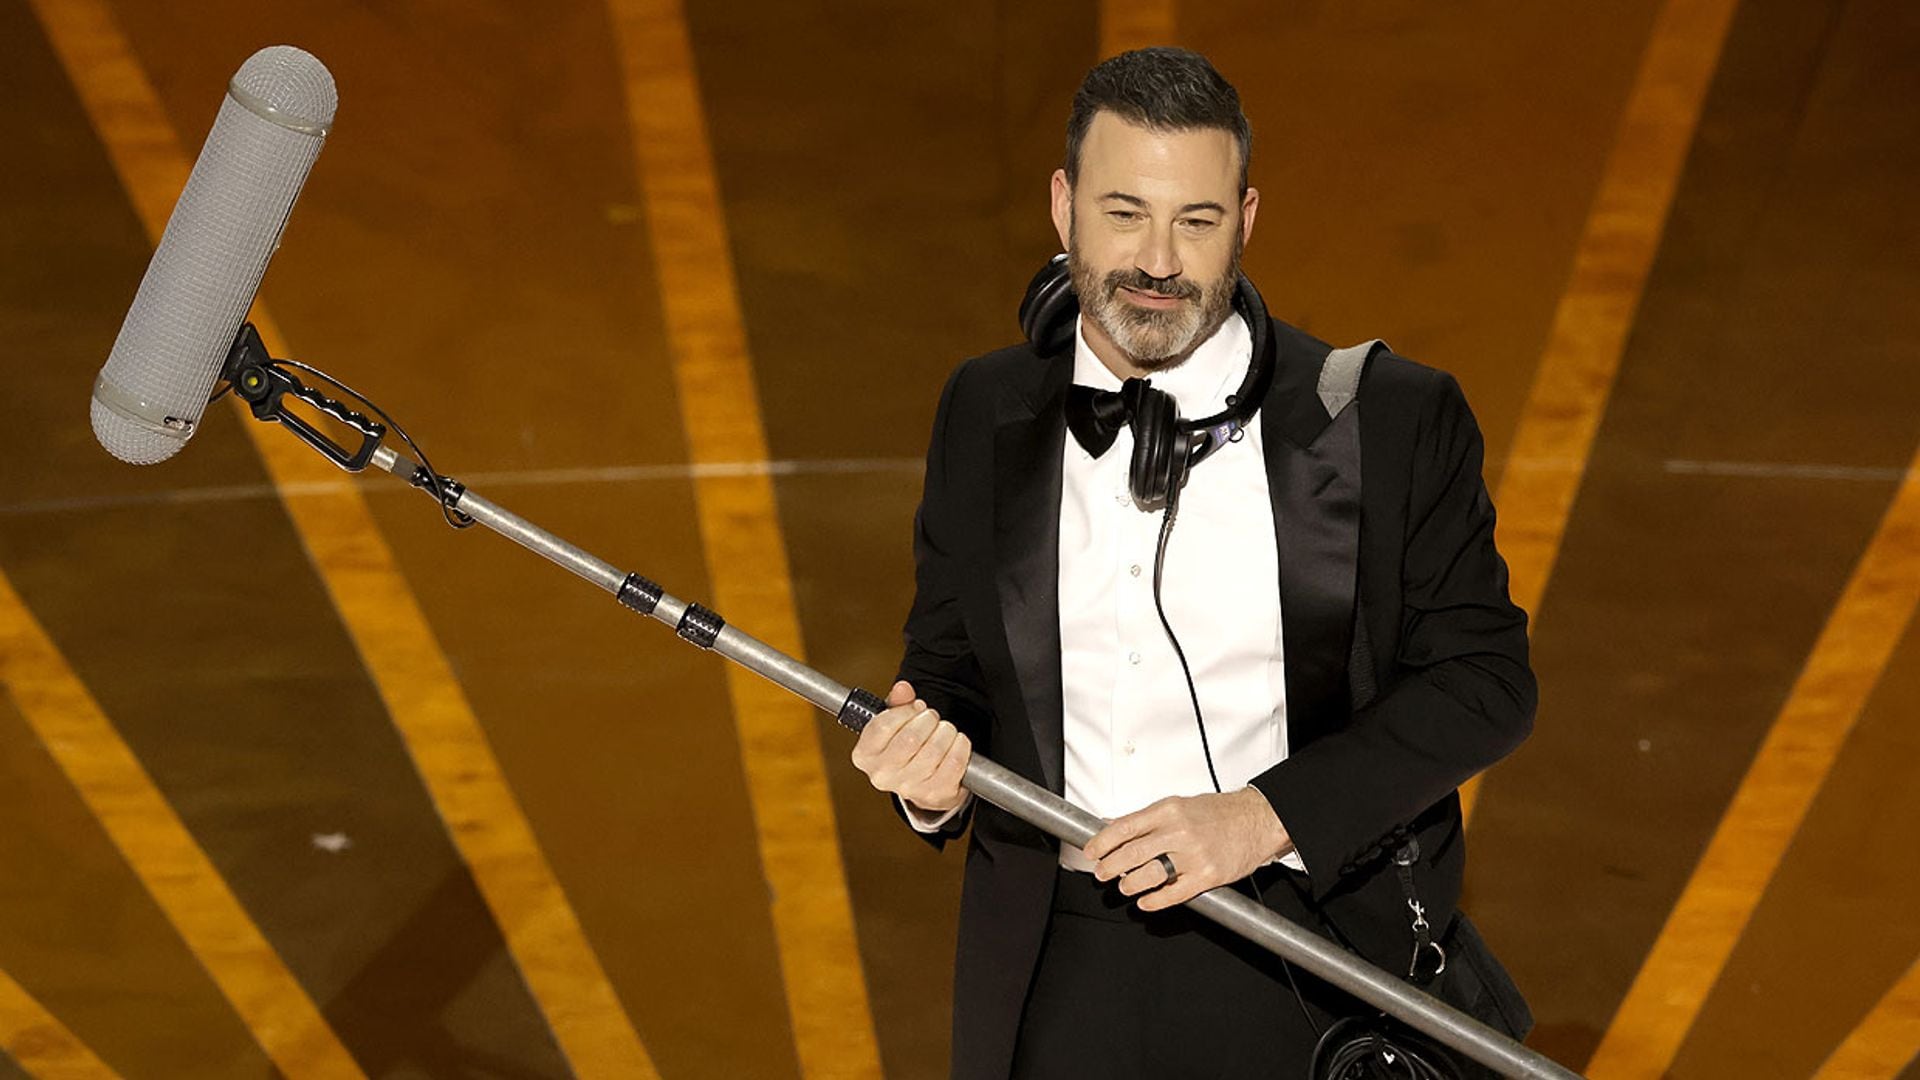 Los irónicos comentarios de Jimmy Kimmel que han traído de vuelta a Will Smith a los Oscar